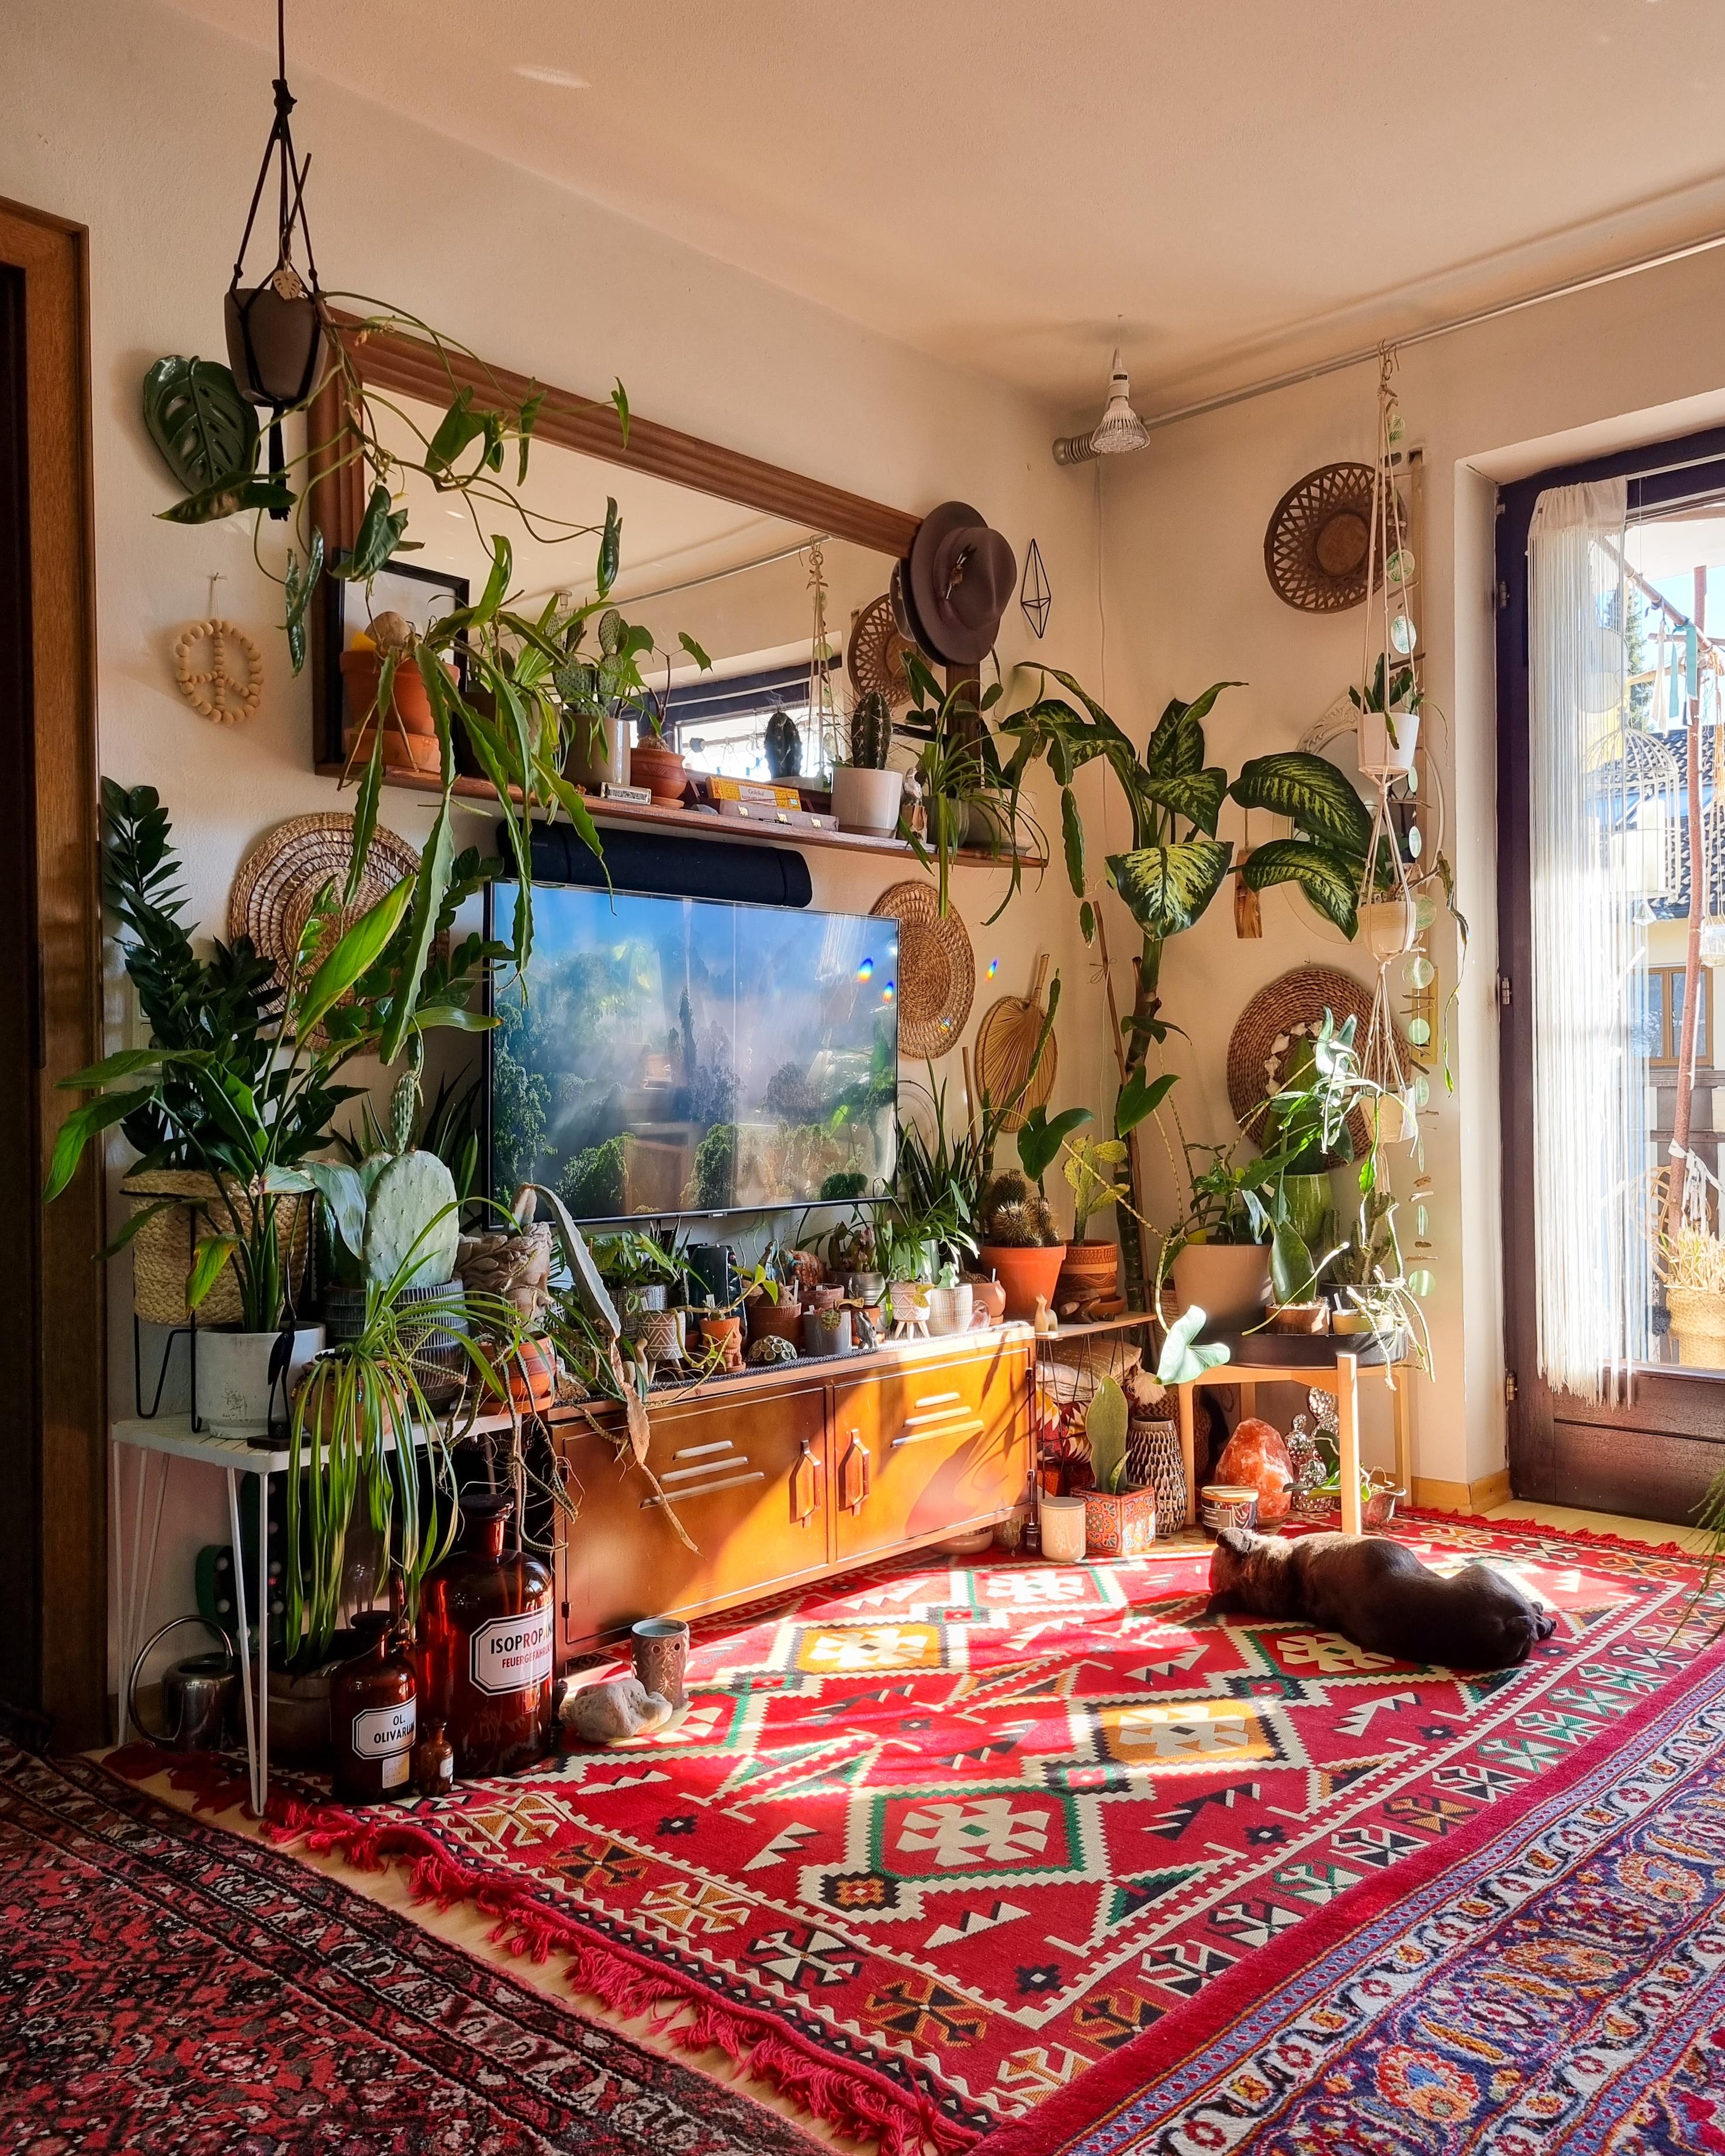 Montags 🪴✌🏼❤️ #Wohnzimmer #Pflanzen #regal #Spiegel #Kommode #Fernseher #Teppich #boho #couchstyle #hippie